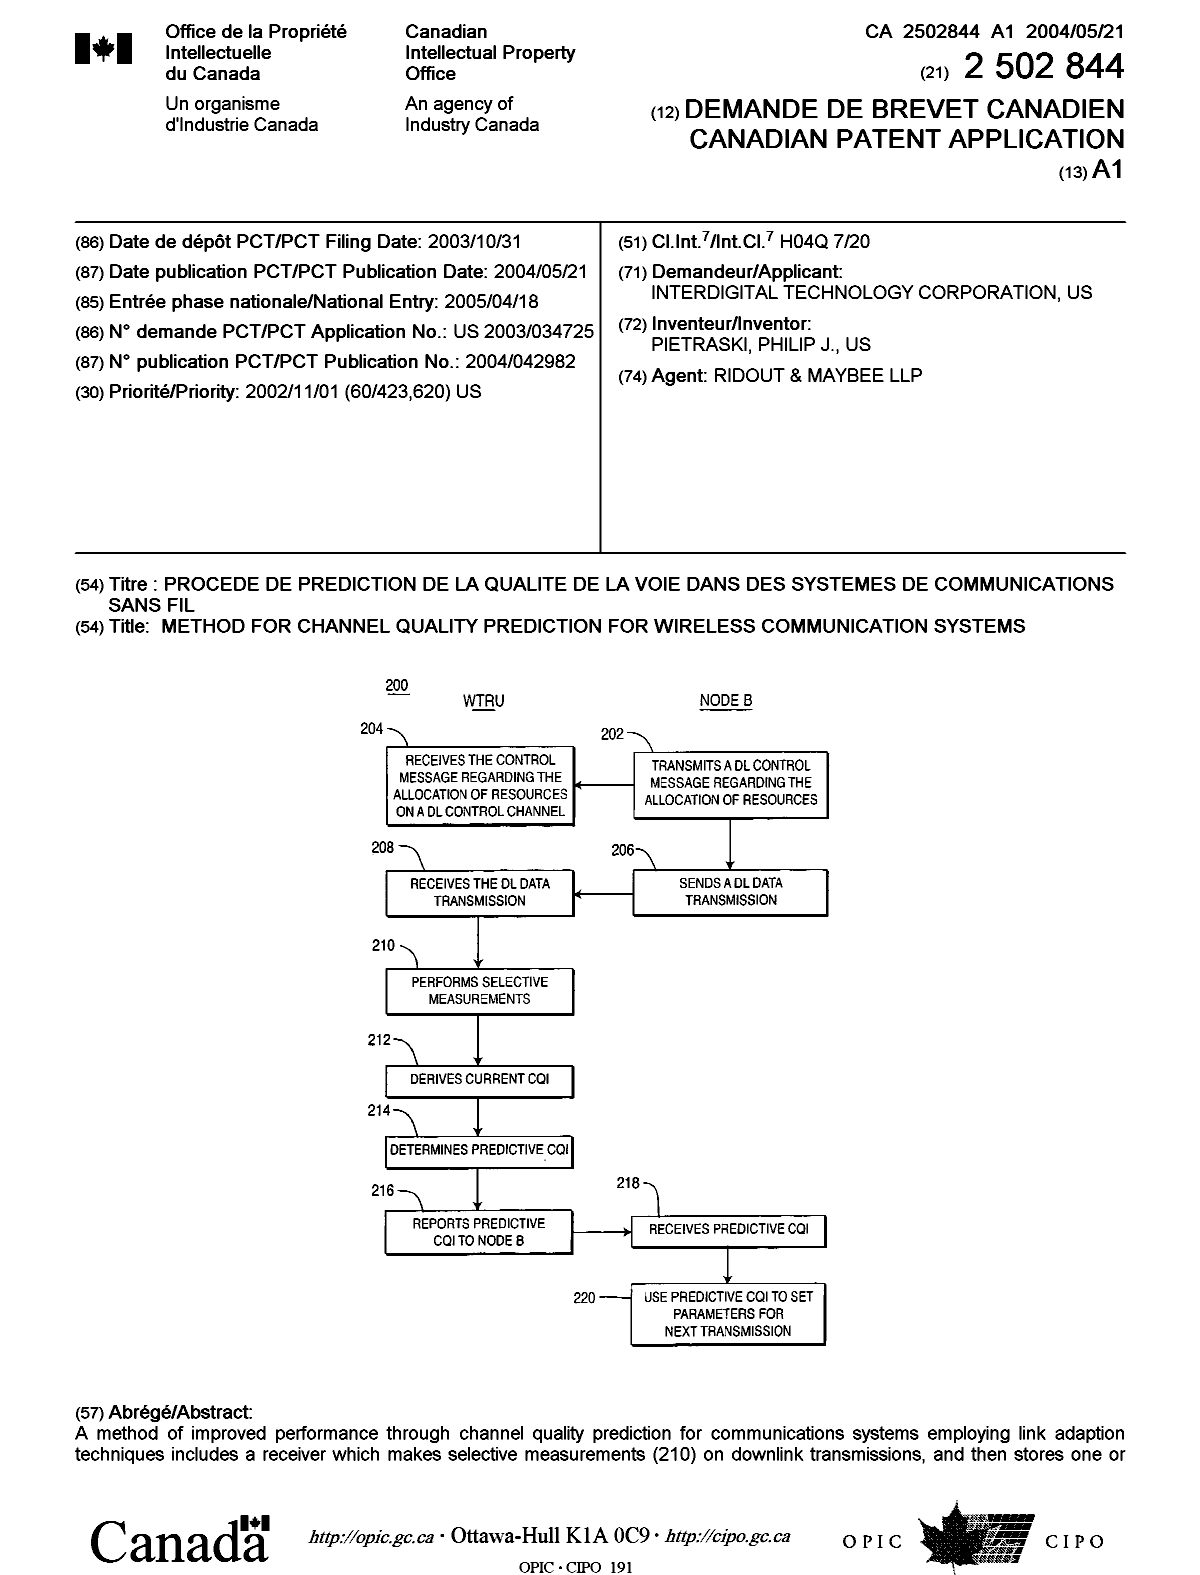 Document de brevet canadien 2502844. Page couverture 20050714. Image 1 de 2